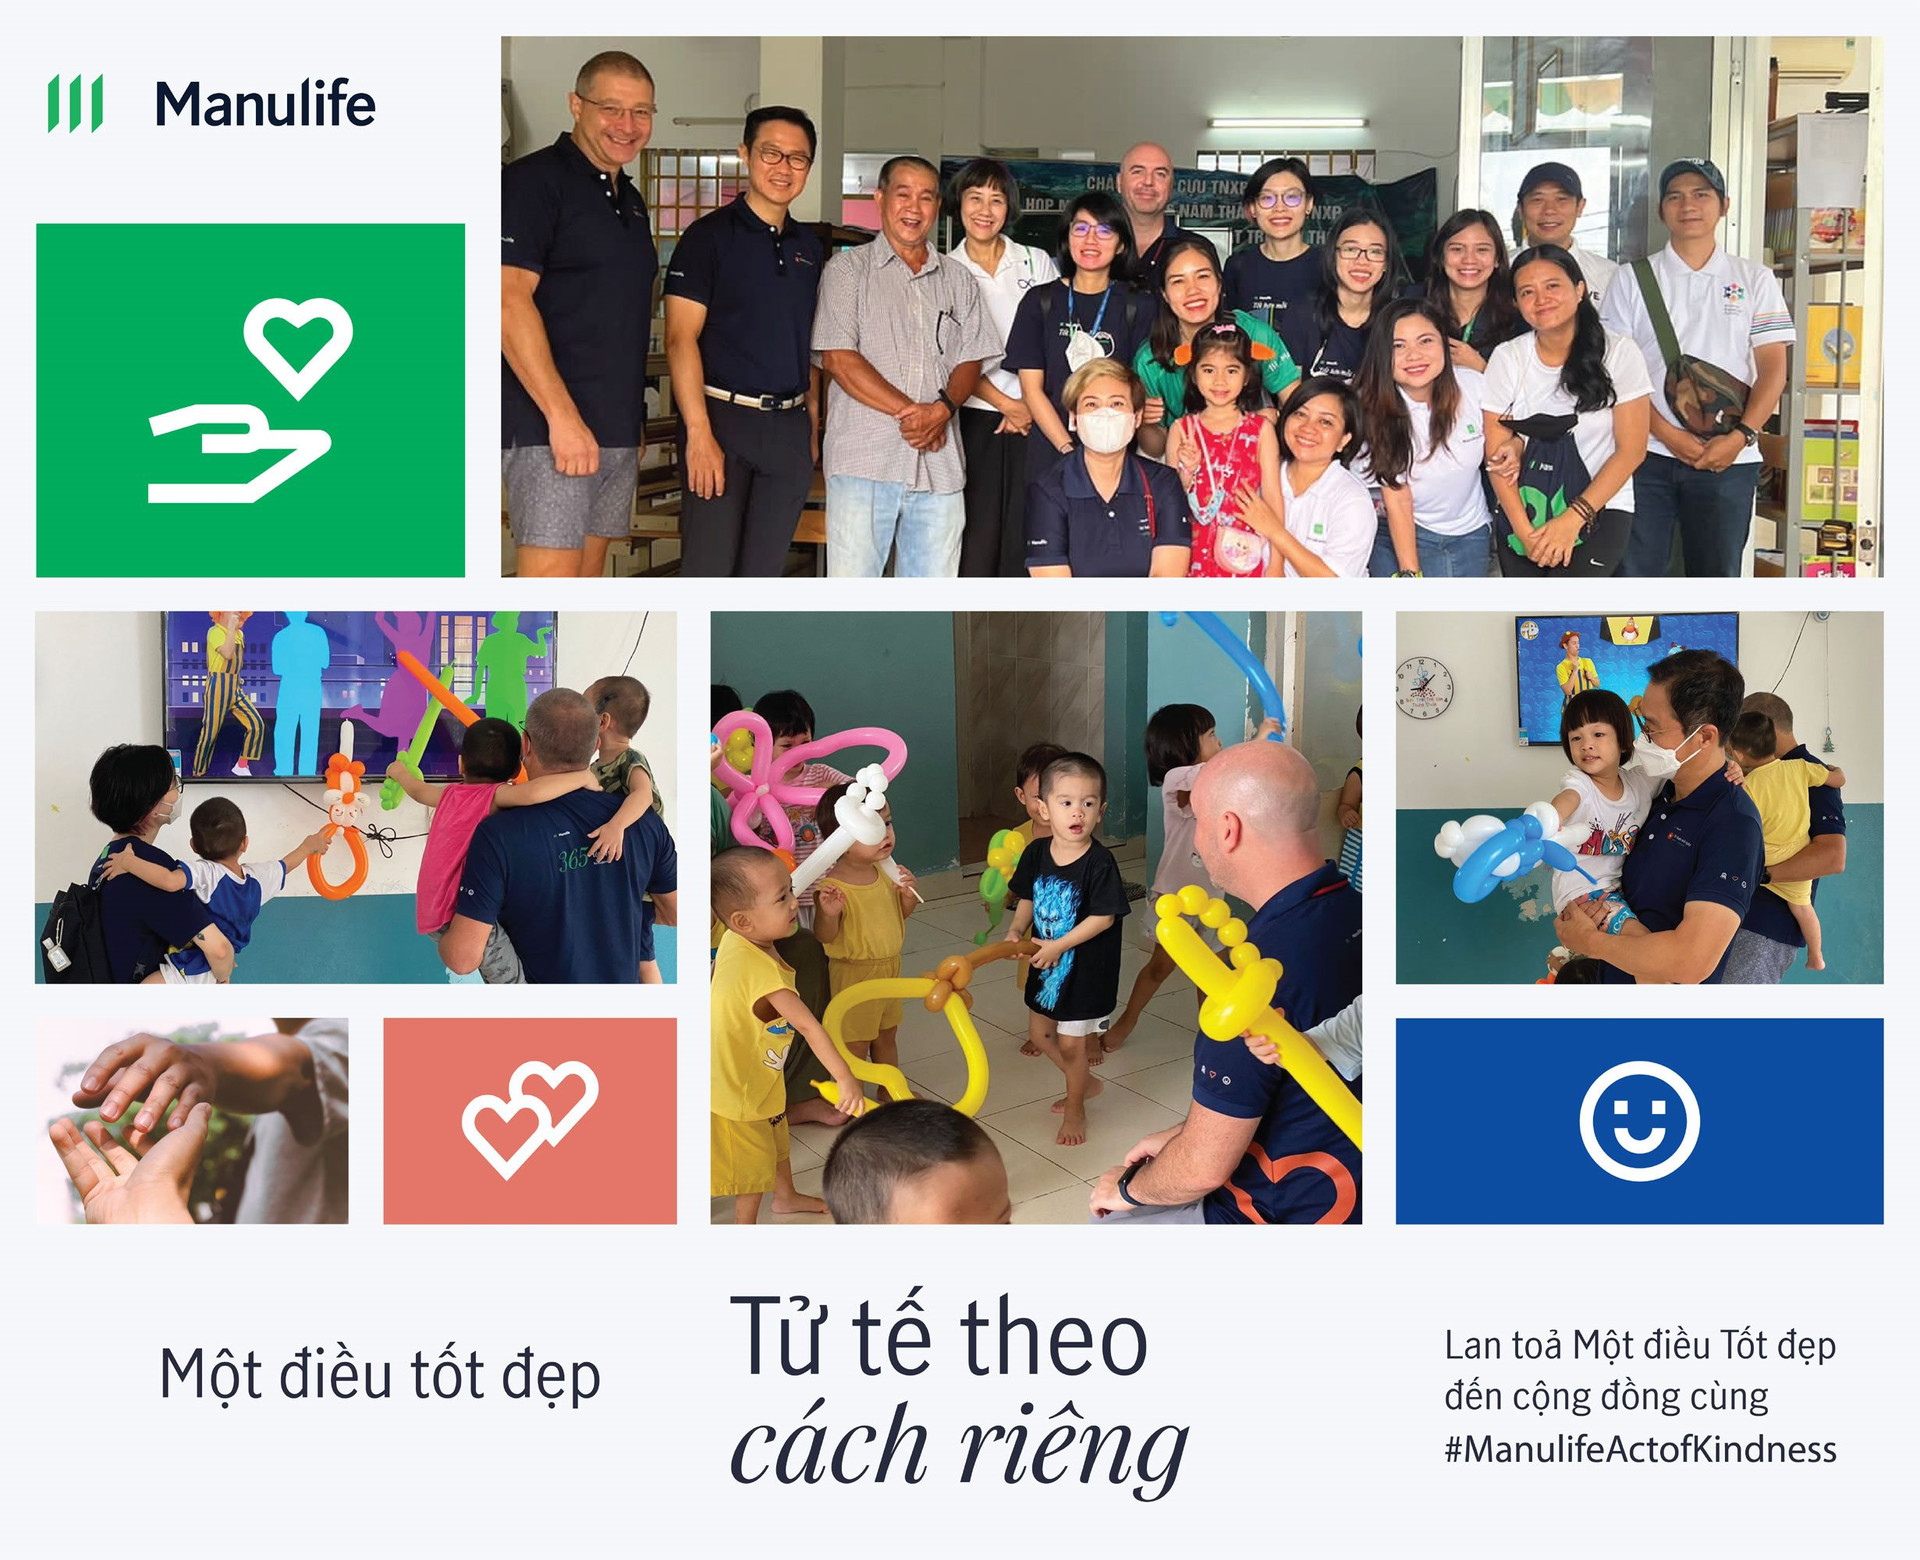 Manulife Việt Nam thúc đẩy nhân viên làm điều tốt trong cộng đồng với chiến dịch ‘Một điều tốt đẹp’